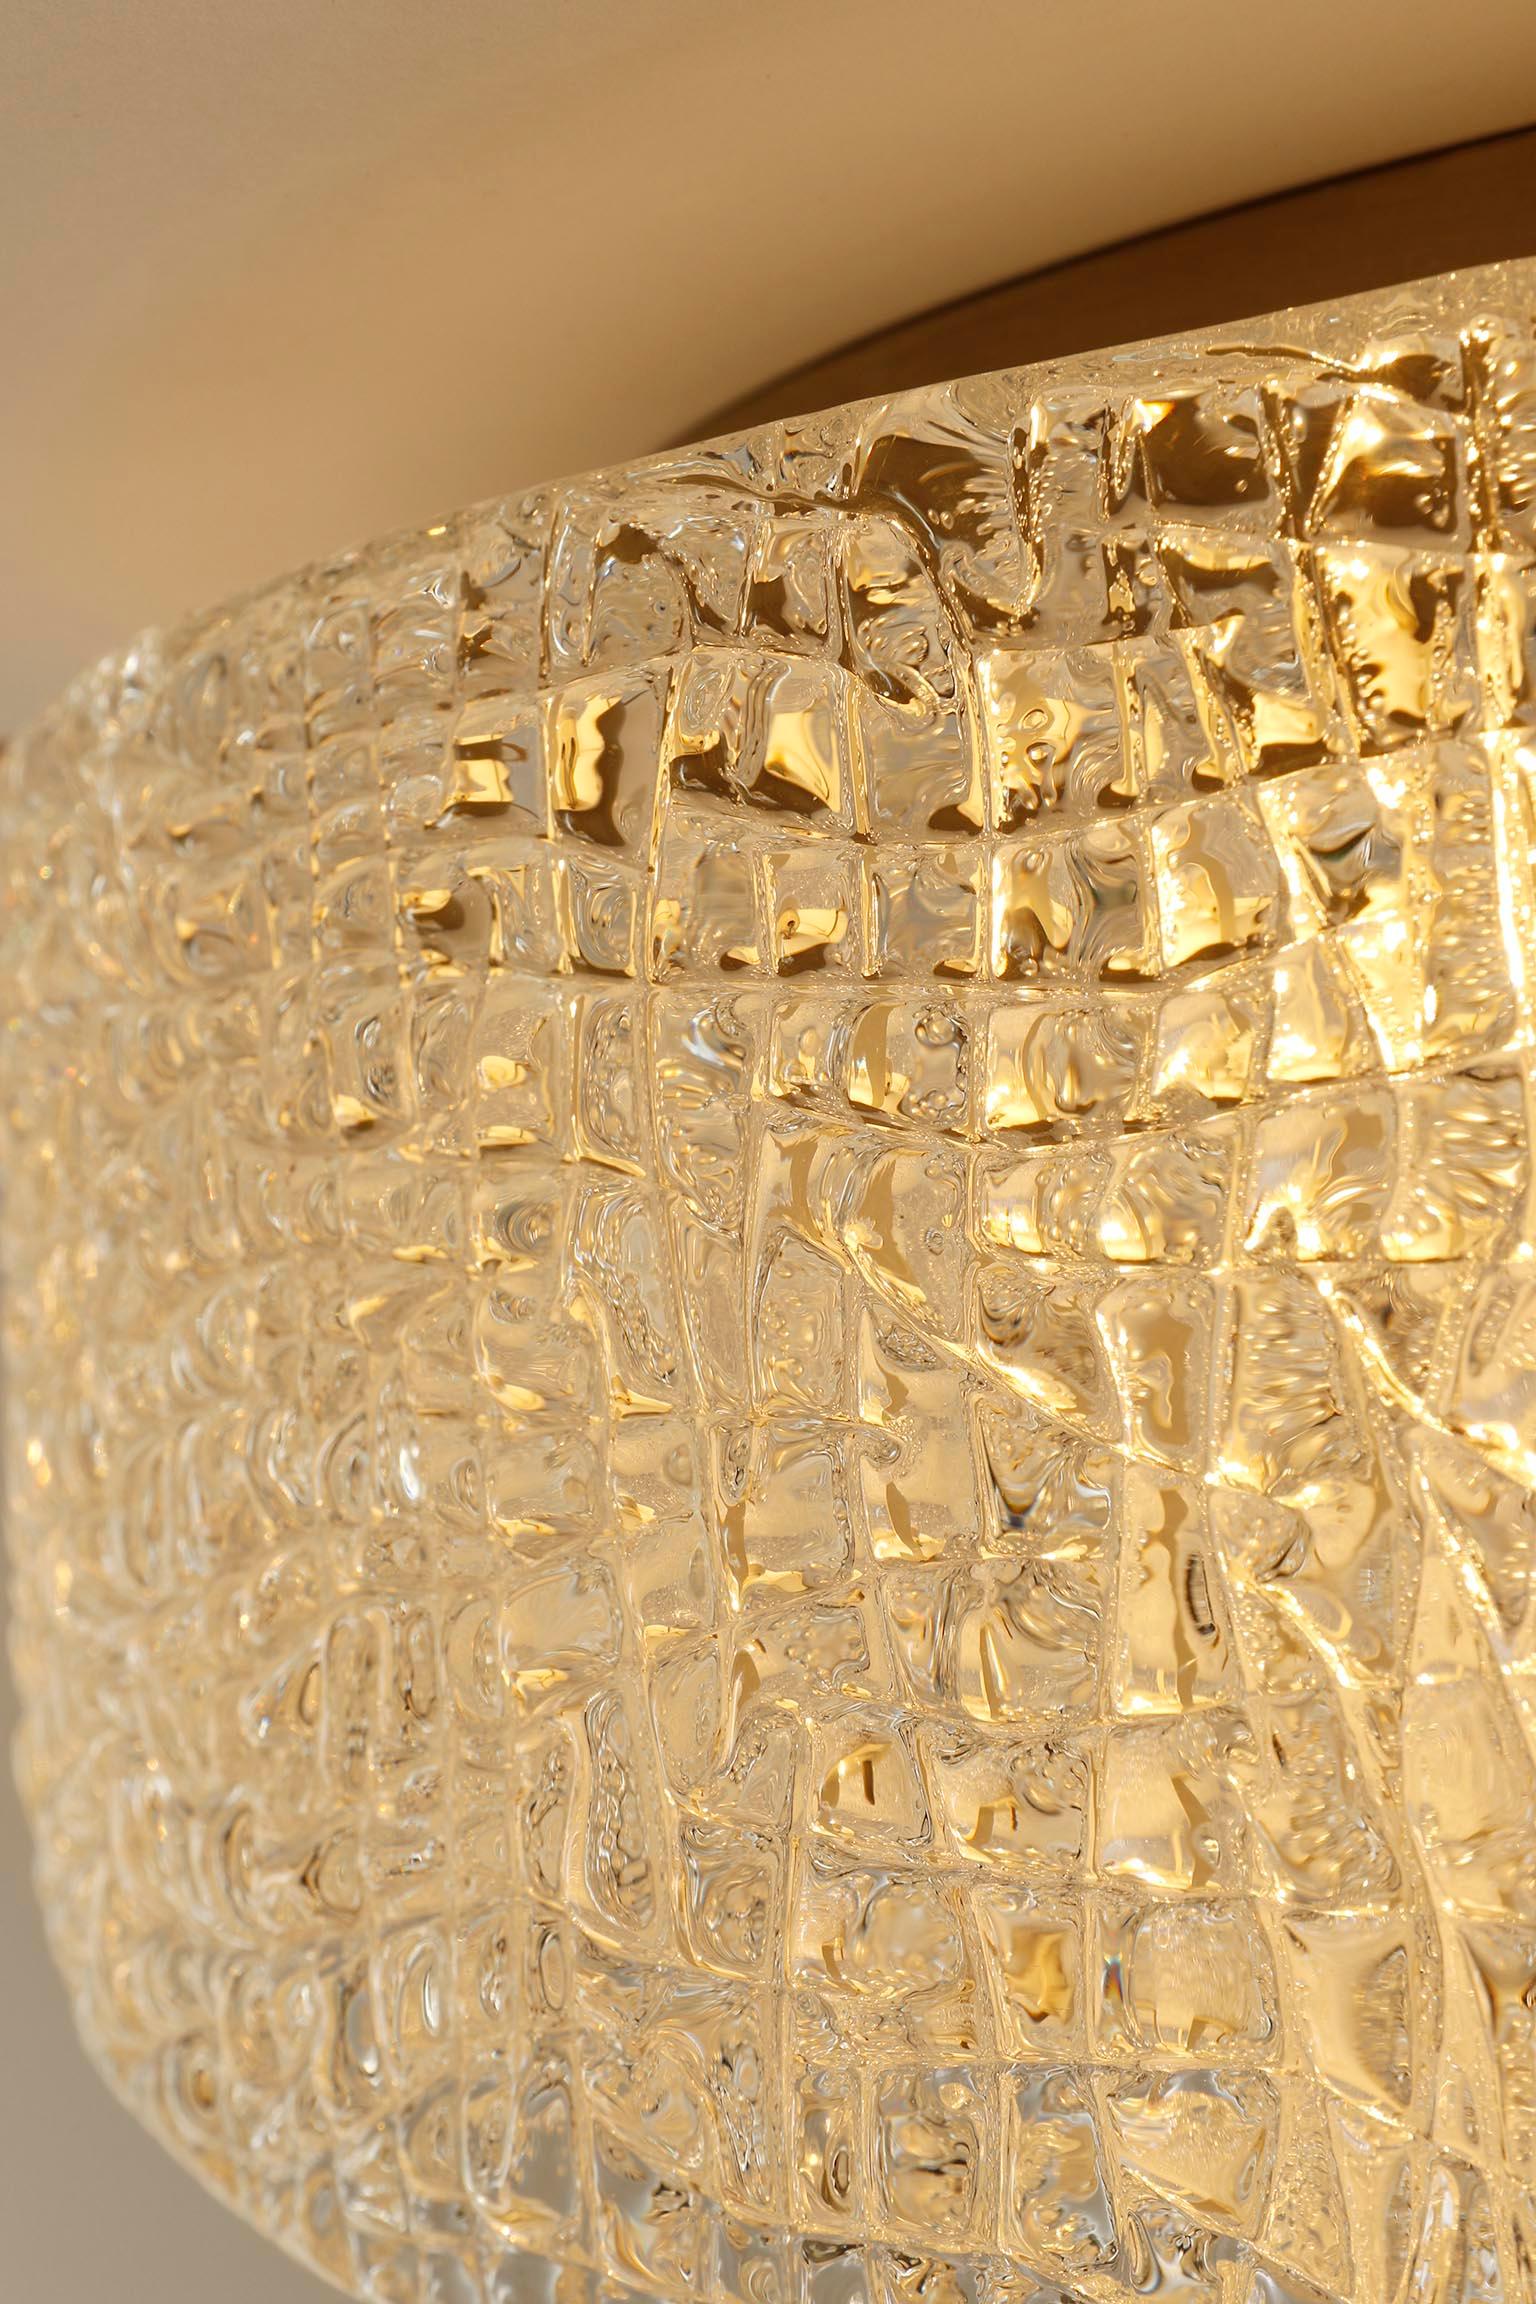 1 von 2 Einbaubeleuchtungssesseln aus strukturiertem Glas und Chrom Nickel von Kaiser Leuchten, 1960er Jahre (Muranoglas)